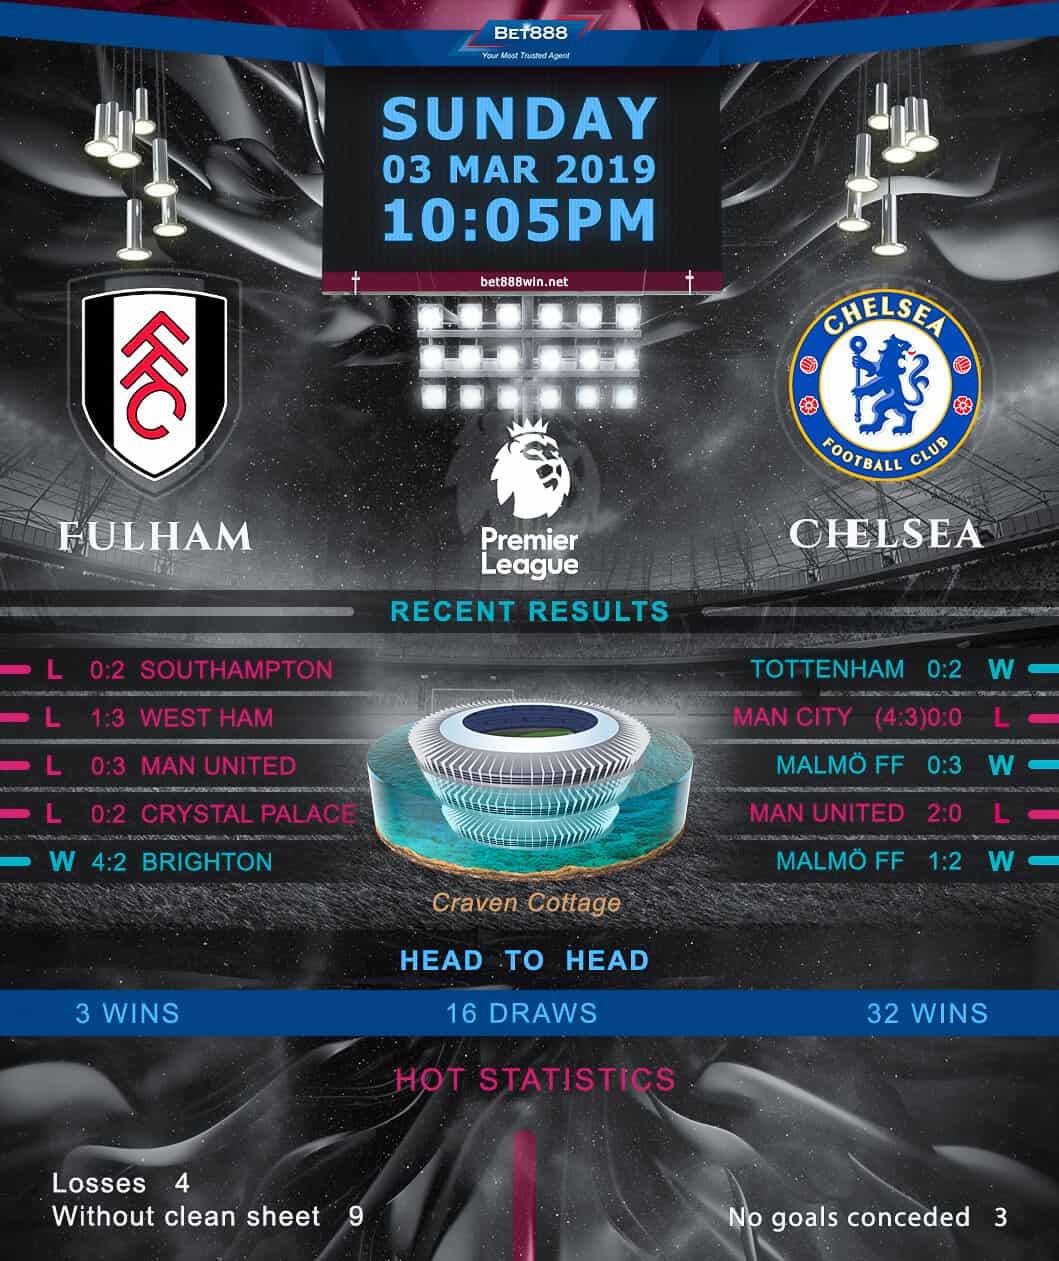 Fulham vs Chelsea 03/03/19